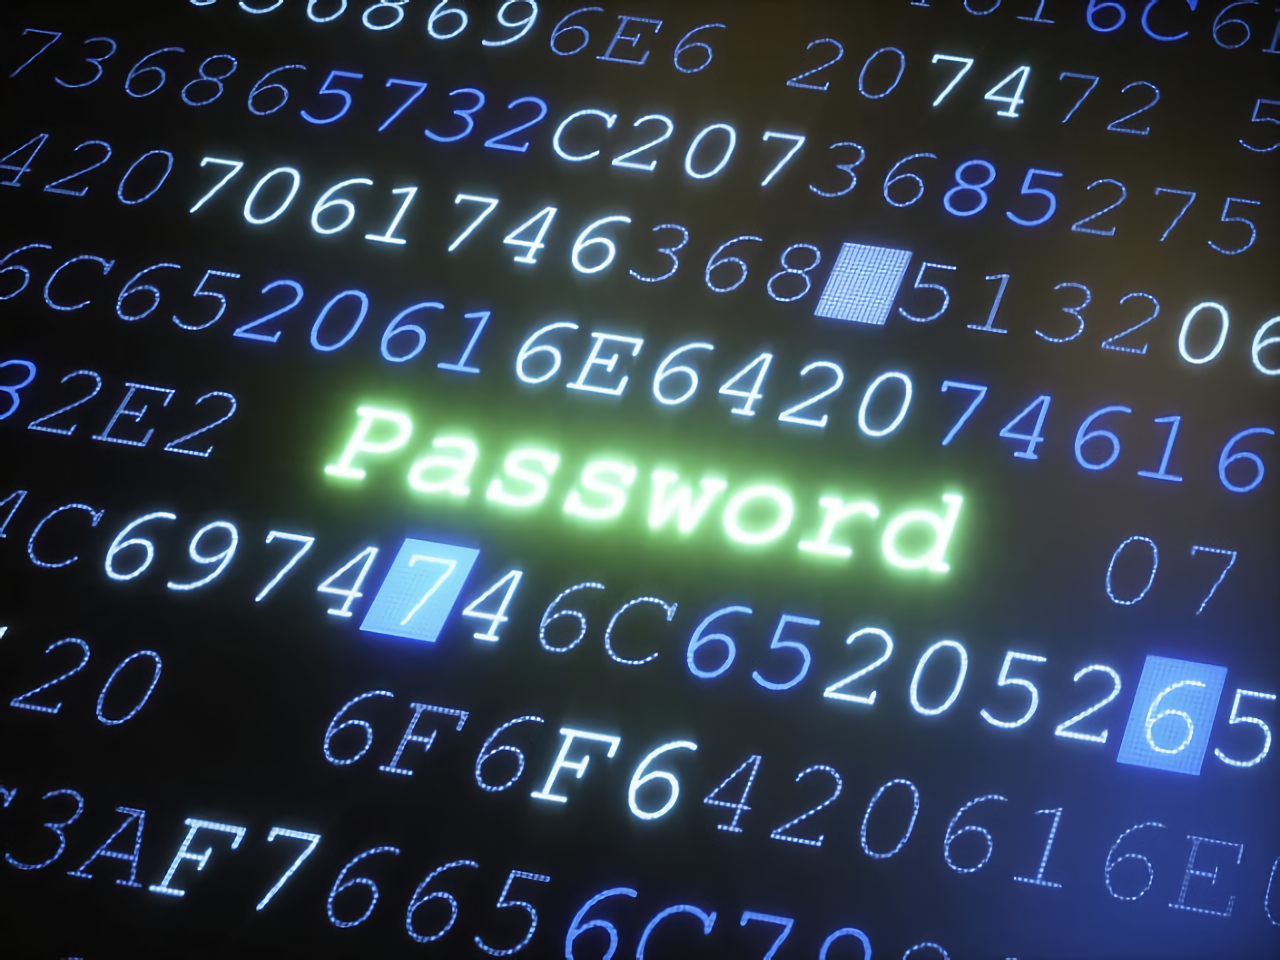 Названы самые распространенные и небезопасные пароли